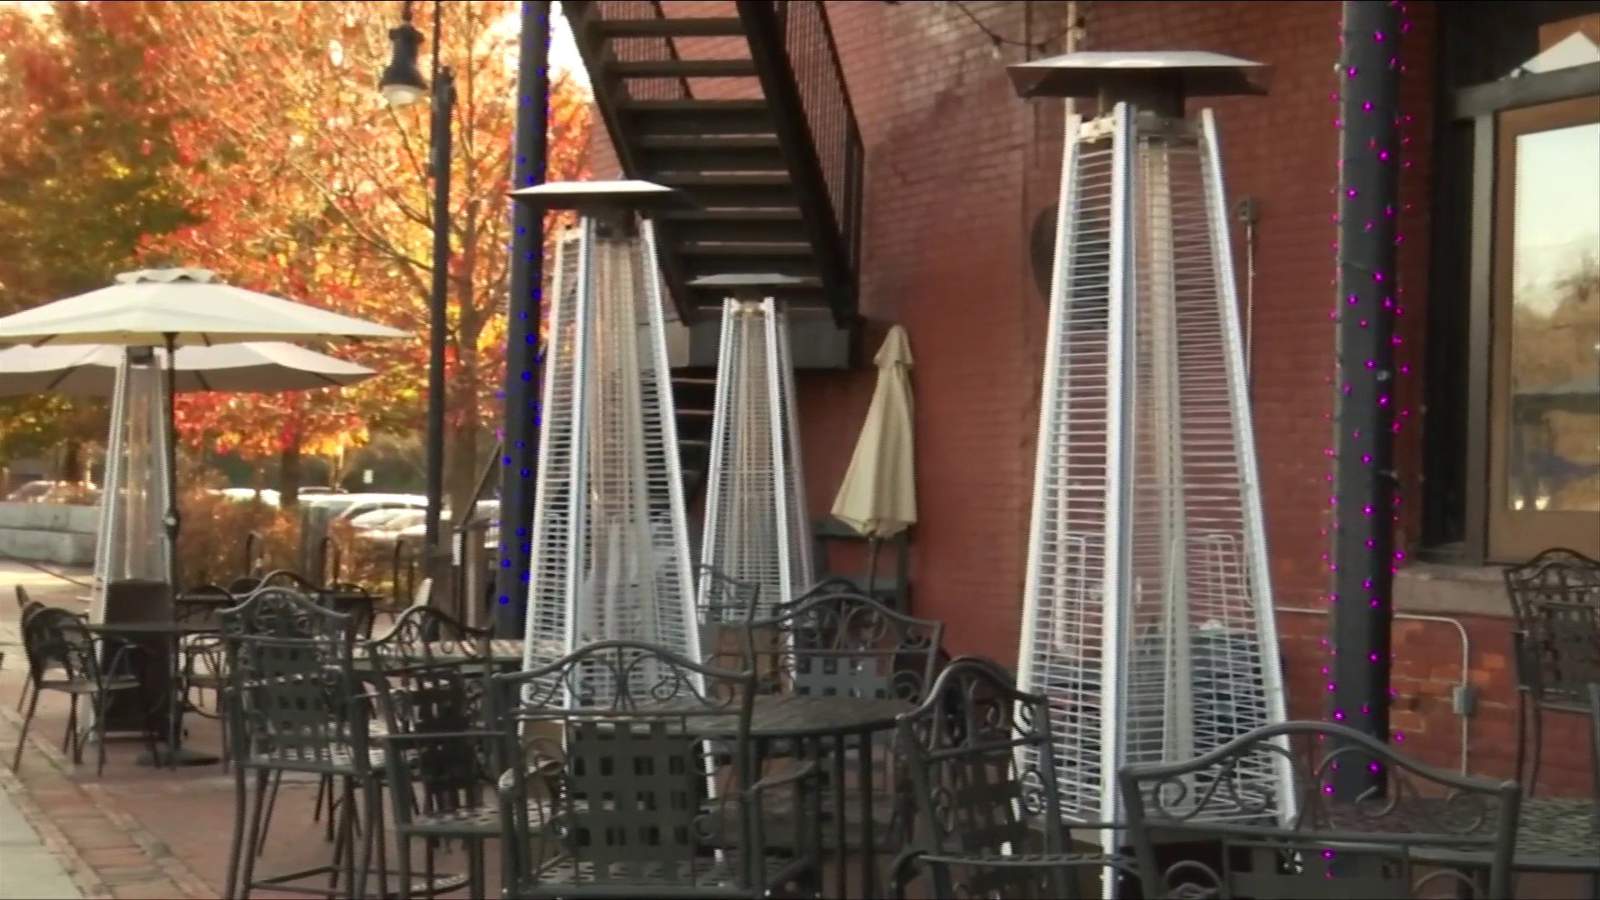 Lynchburg restaurants adjust outdoor dining to survive winter months